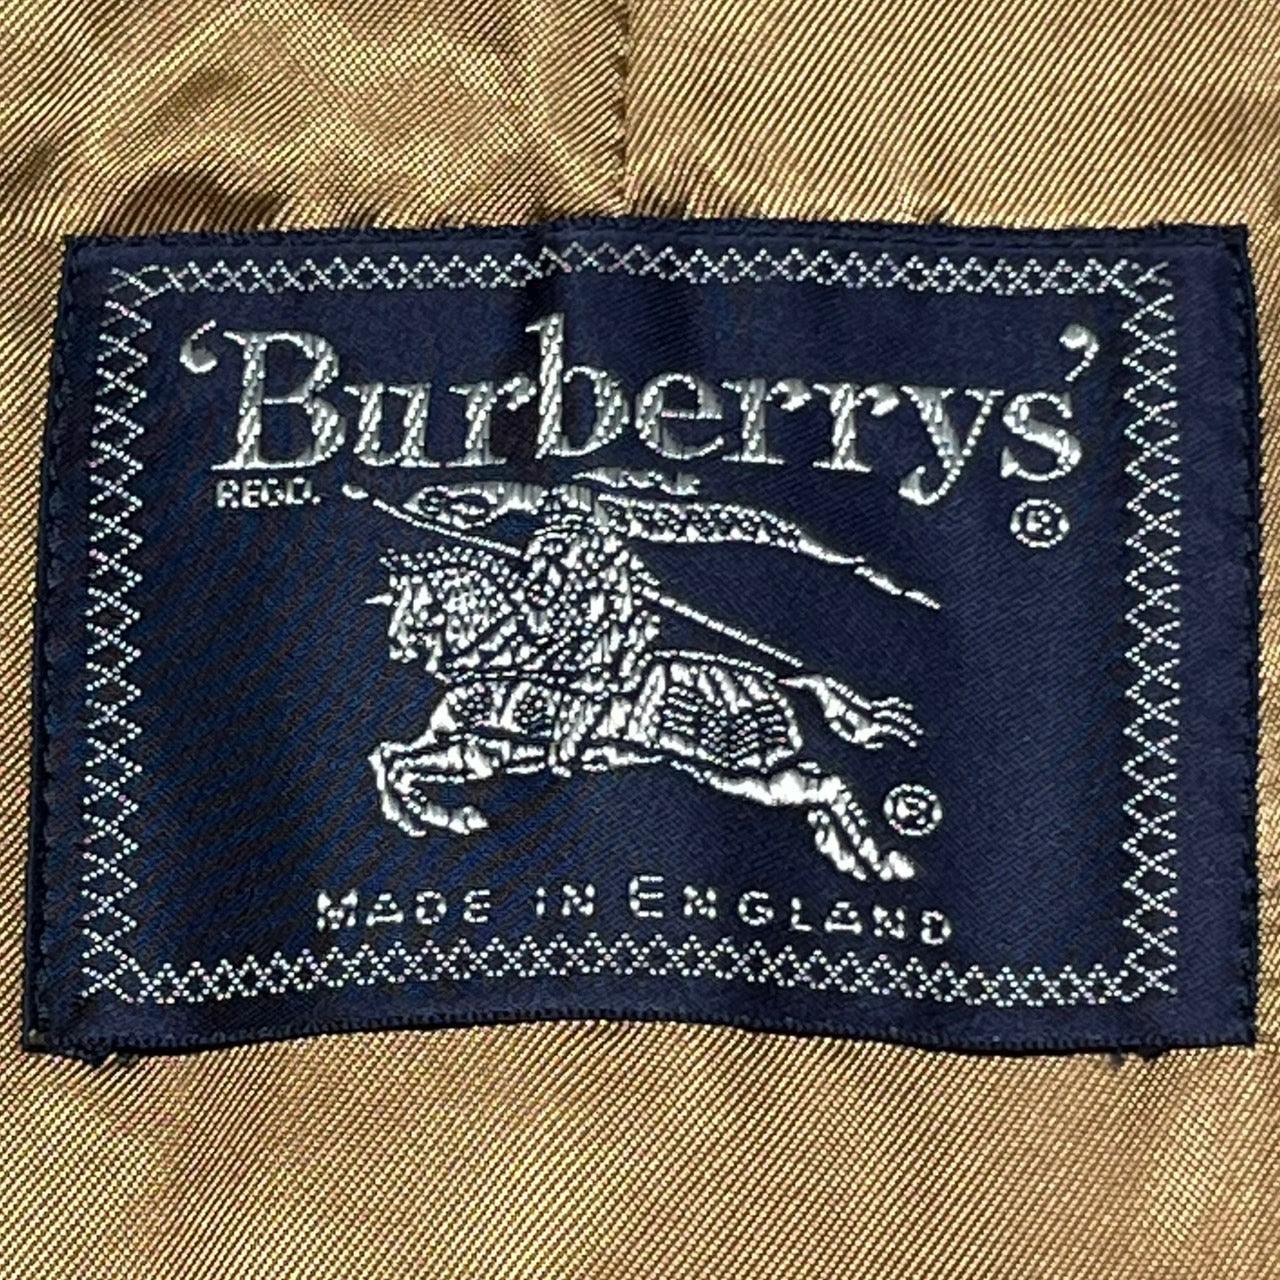 Burberrys(バーバリーズ) 90'sノヴァチェックライナーステンカラーコート 46(Mサイズ程度) ベージュ